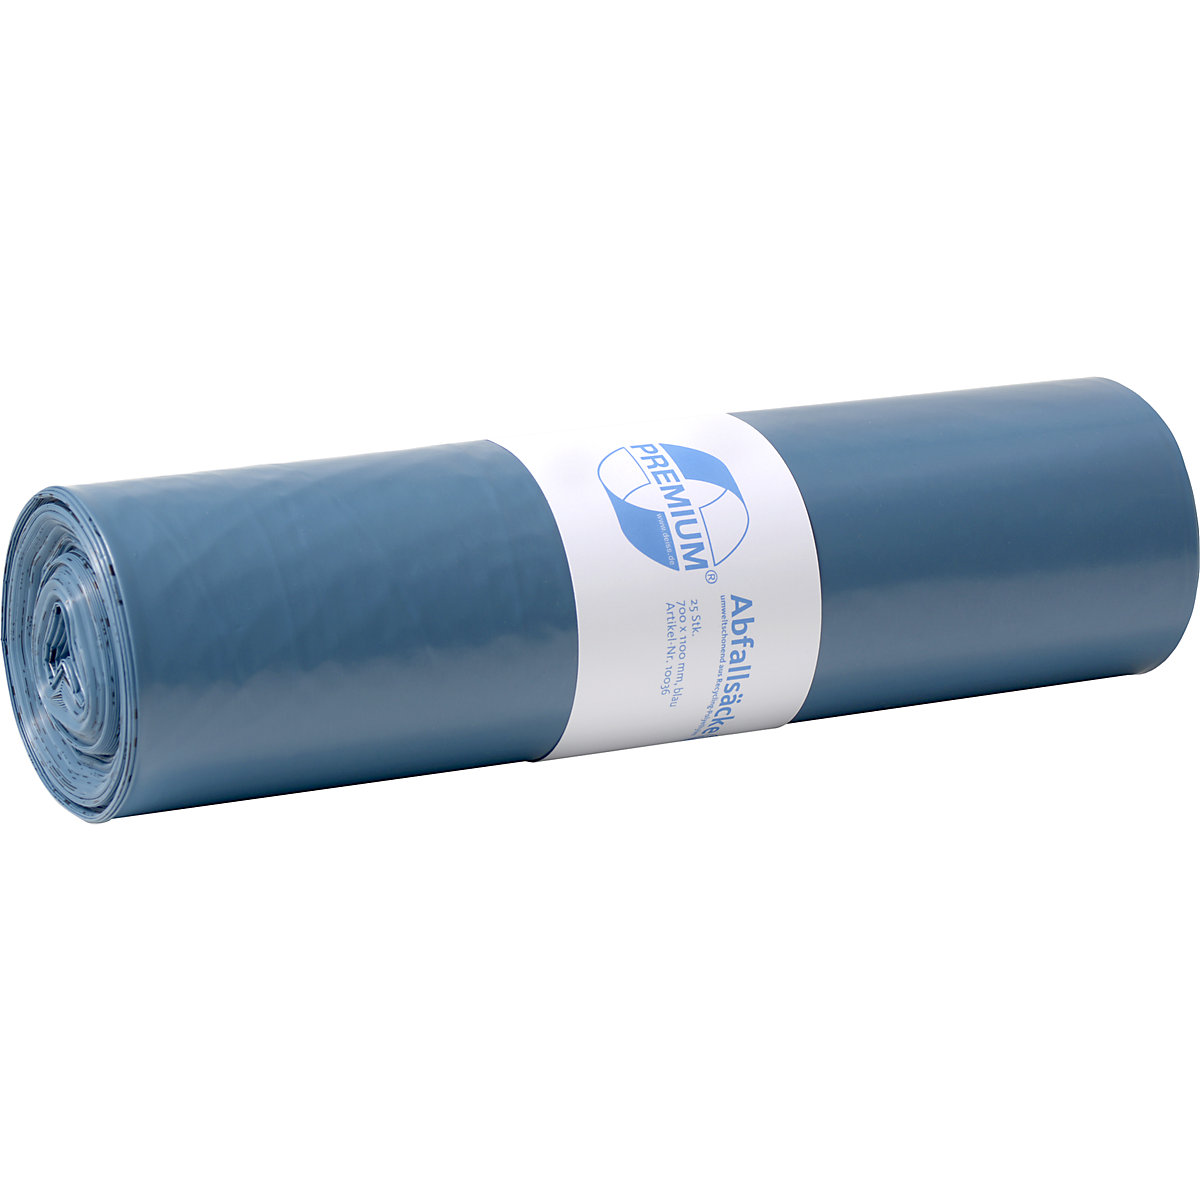 Sacs-poubelle standards en PE basse densité, 120 l, lot de 250, l x h 700 x 1100 mm, épaisseur 60 µm, bleu